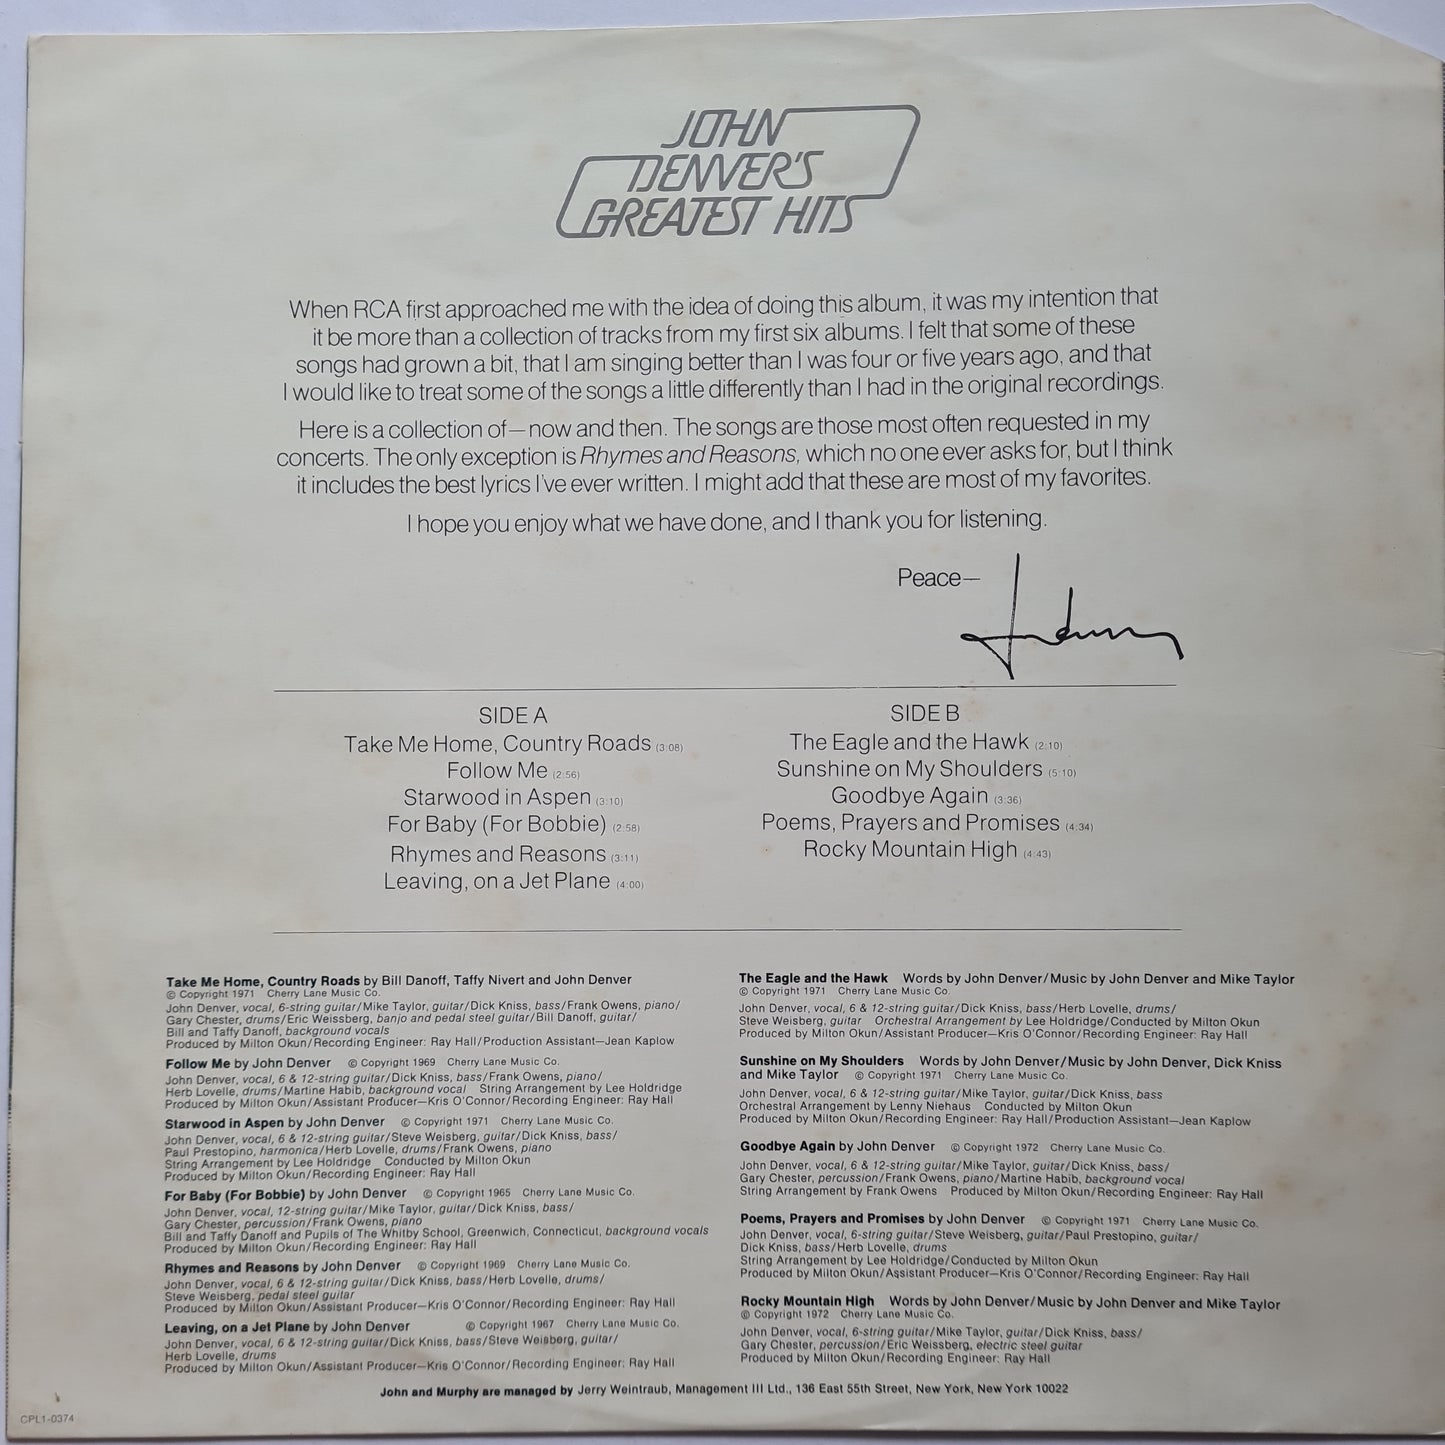 John Denver – John Denver's Greatest Hits - 1973 - Vinyl Record